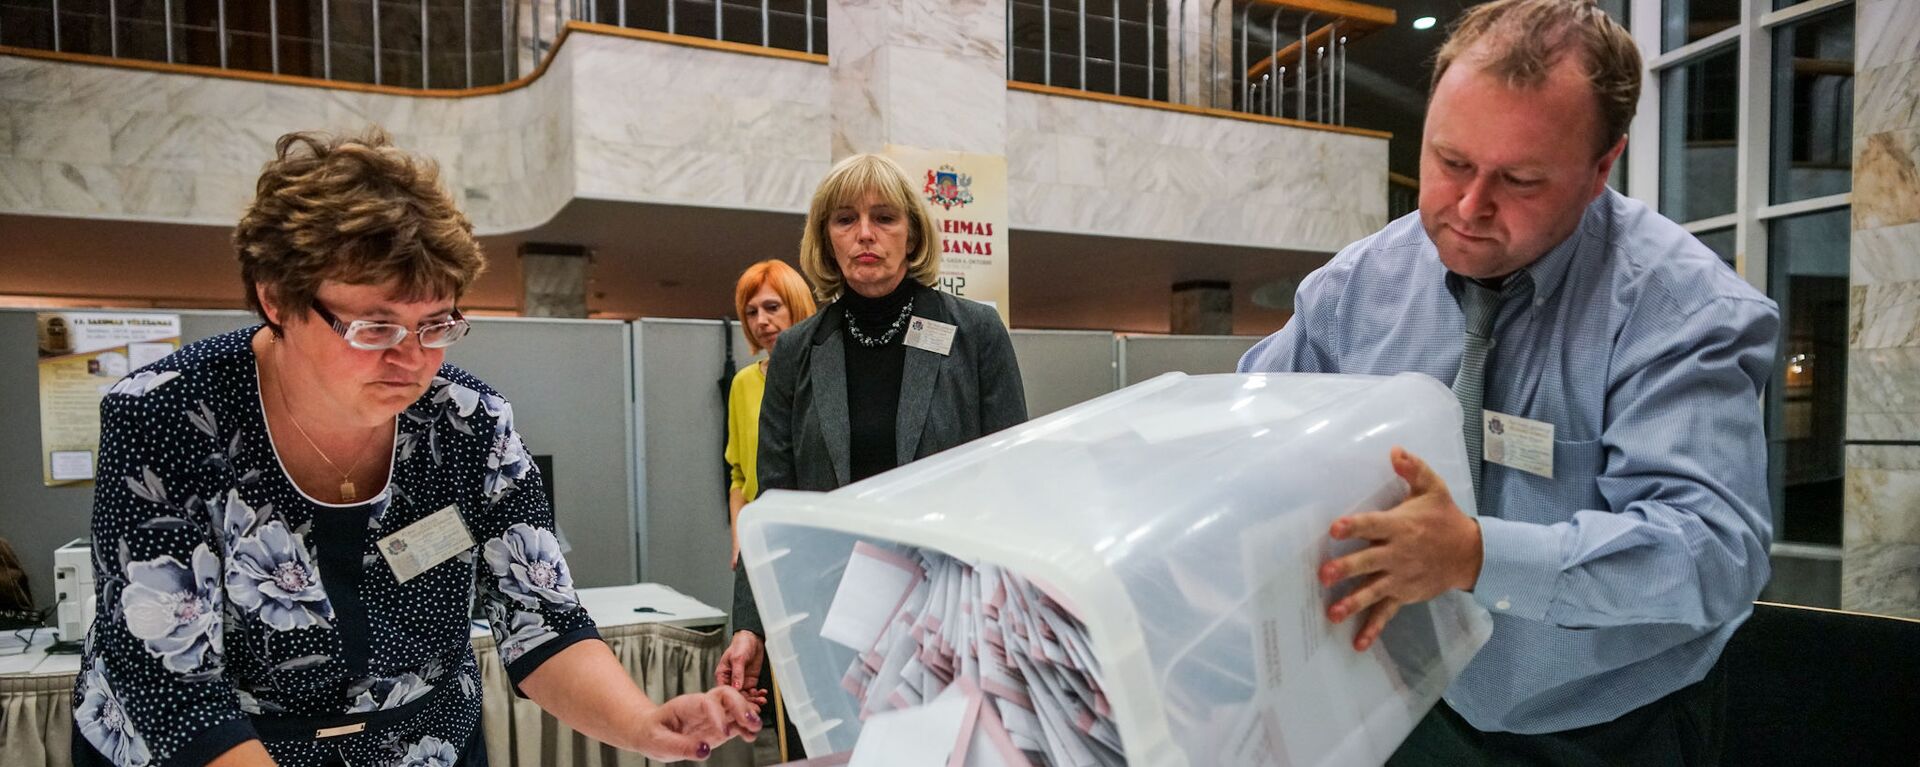 Подсчет голосов на избирательном участке в Доме конгрессов в Риге - Sputnik Латвия, 1920, 24.06.2021